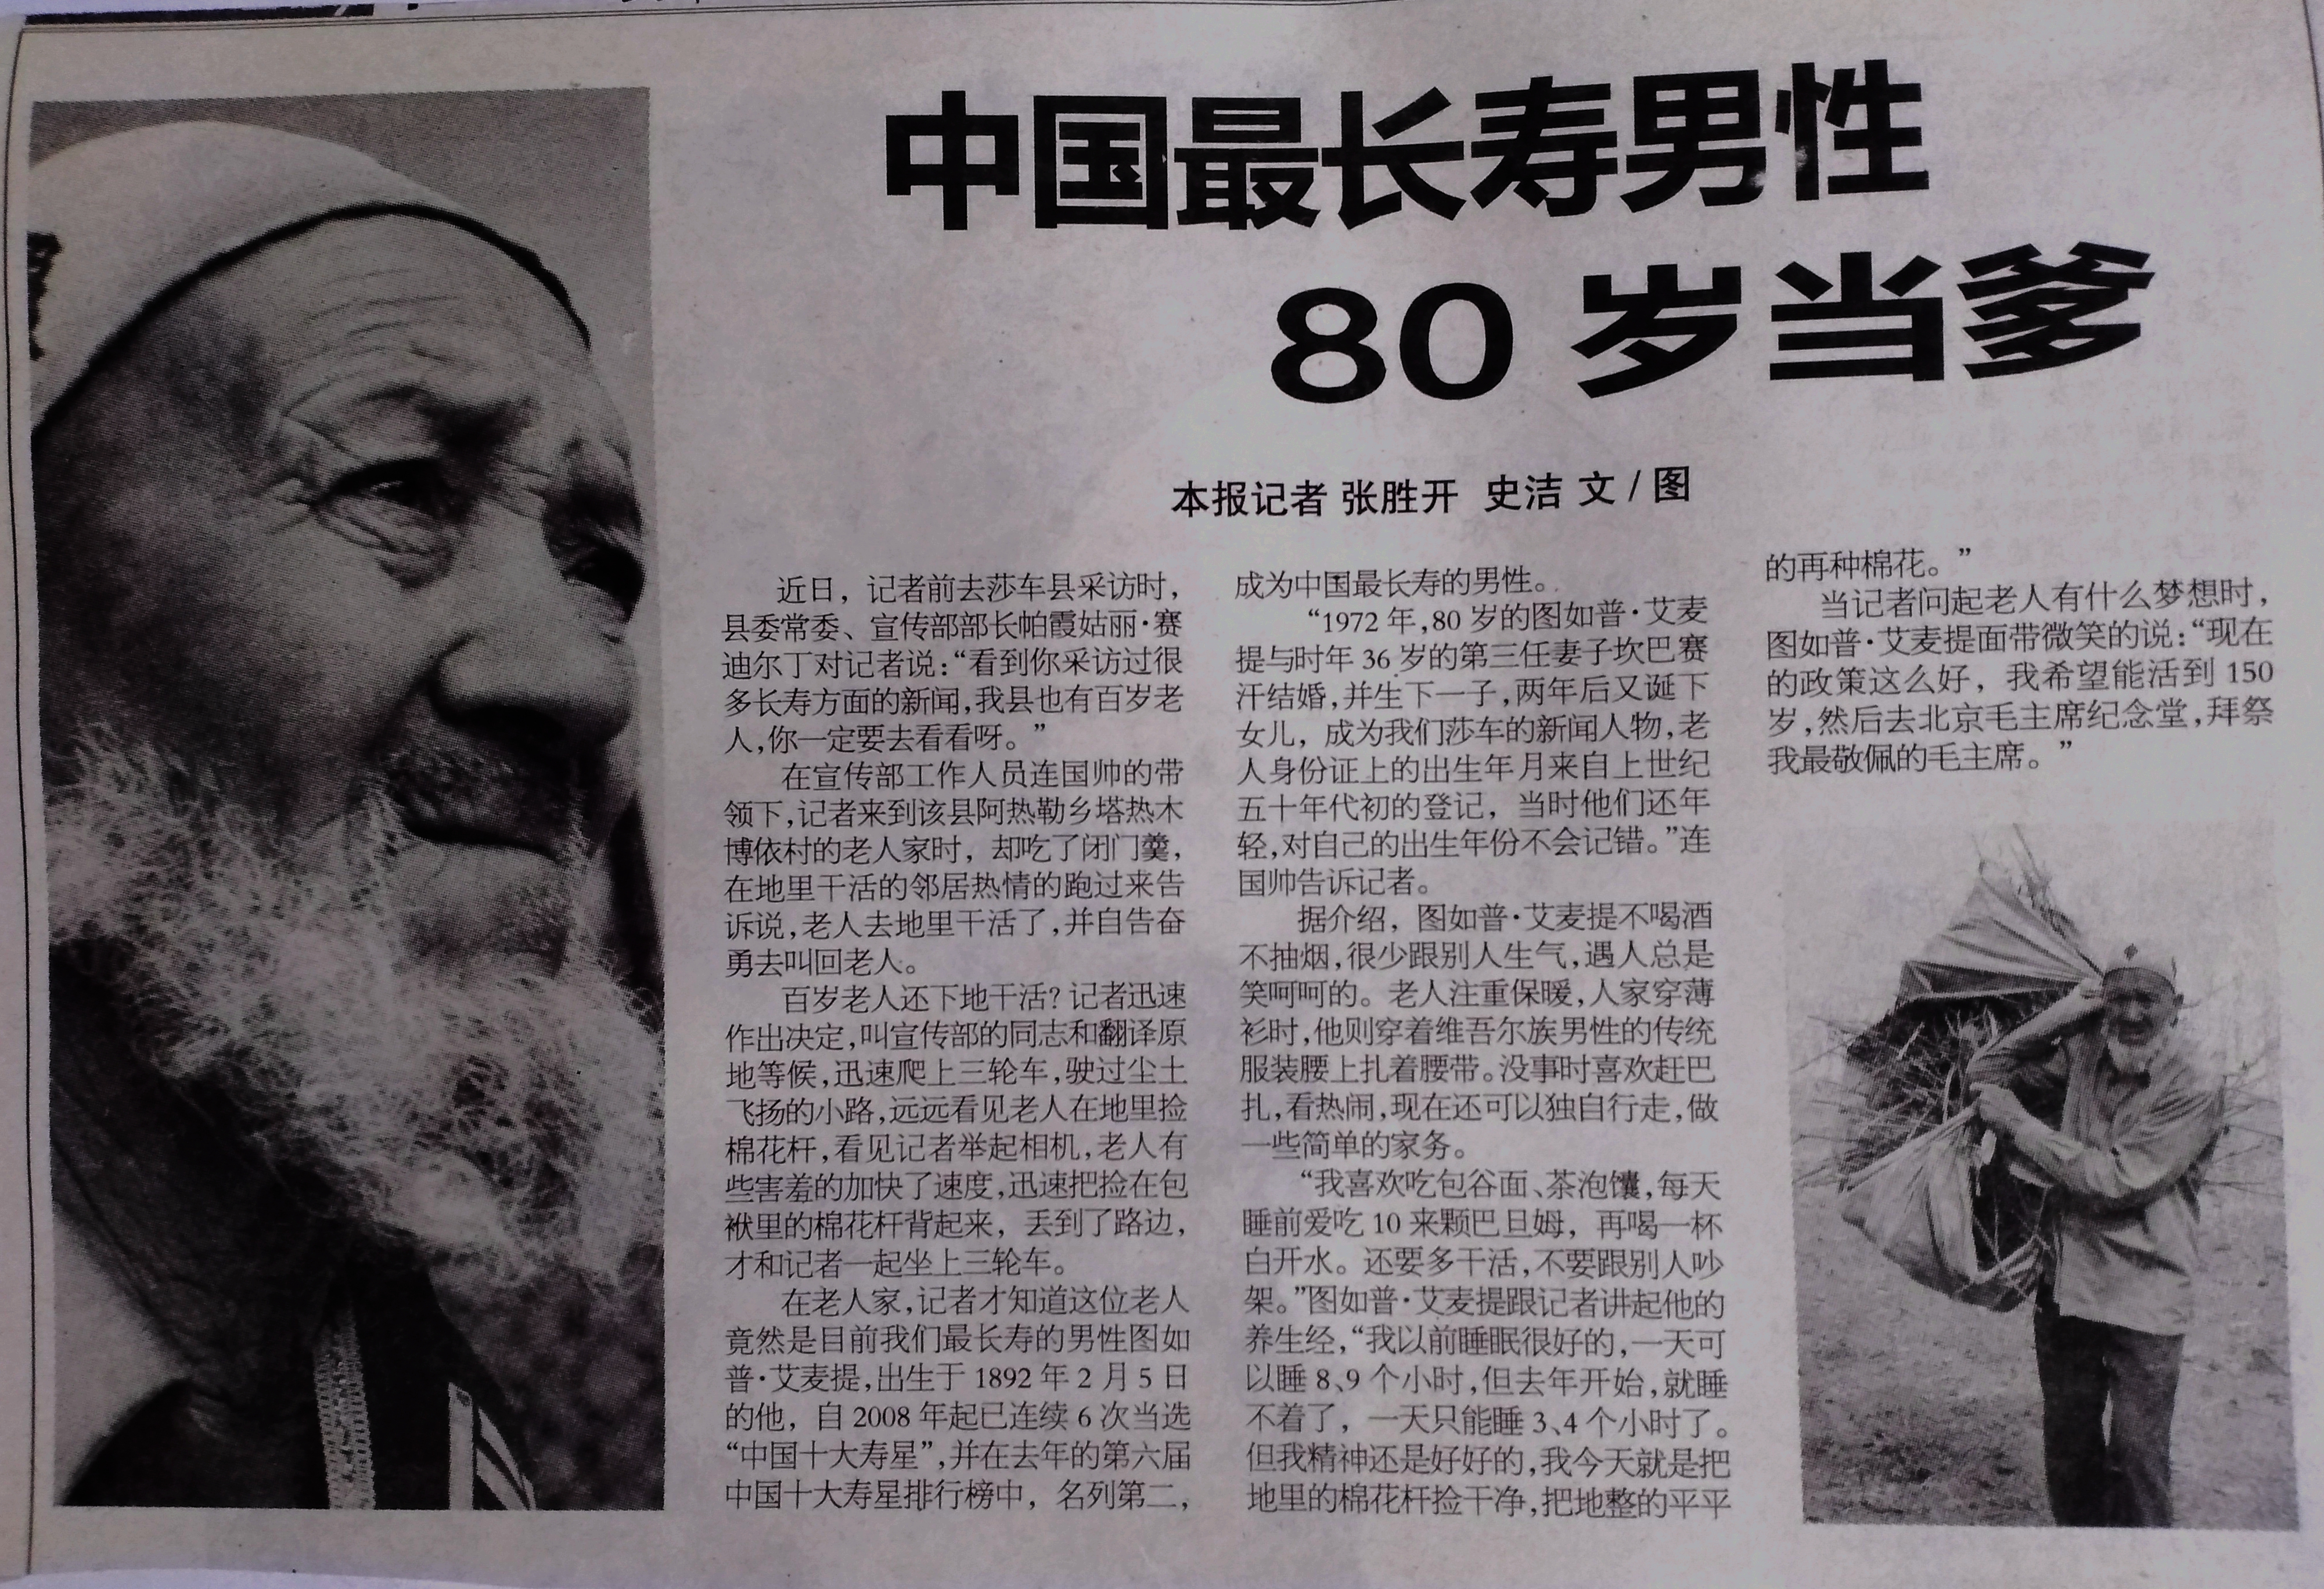 祝我鹊129岁生日快乐(中国最长寿男性：今天129岁啦)